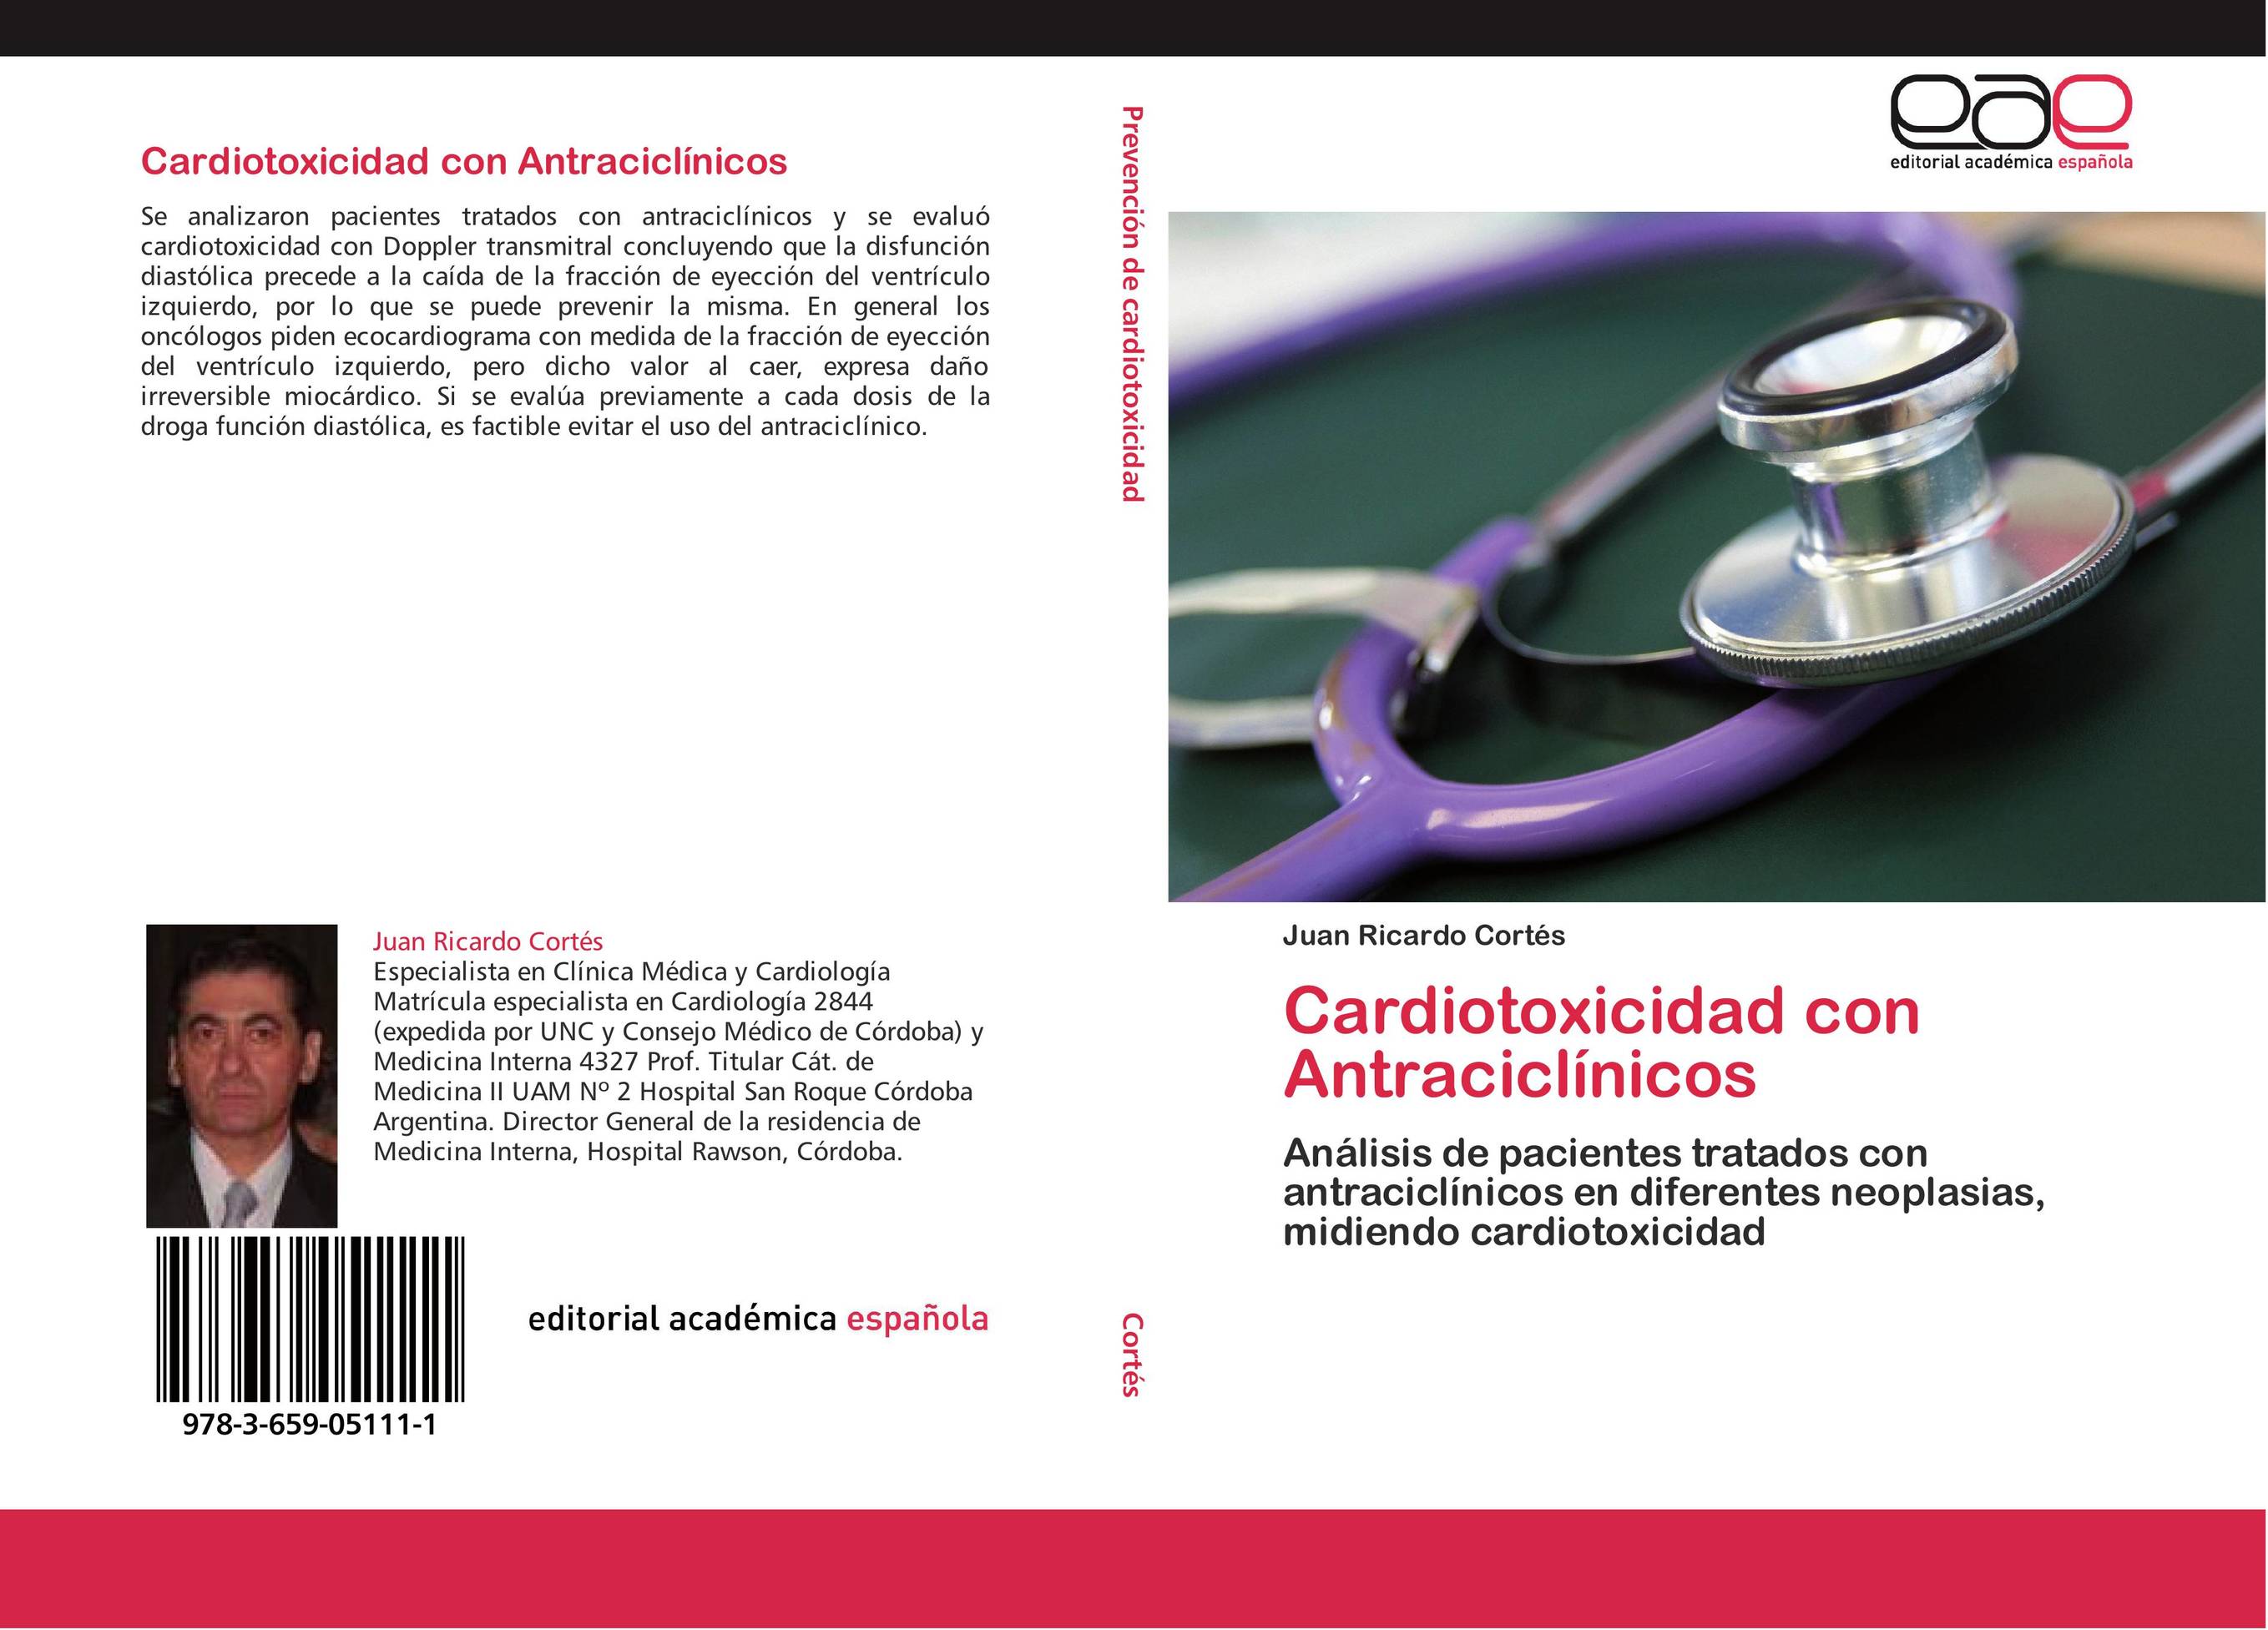 Cardiotoxicidad con Antraciclínicos